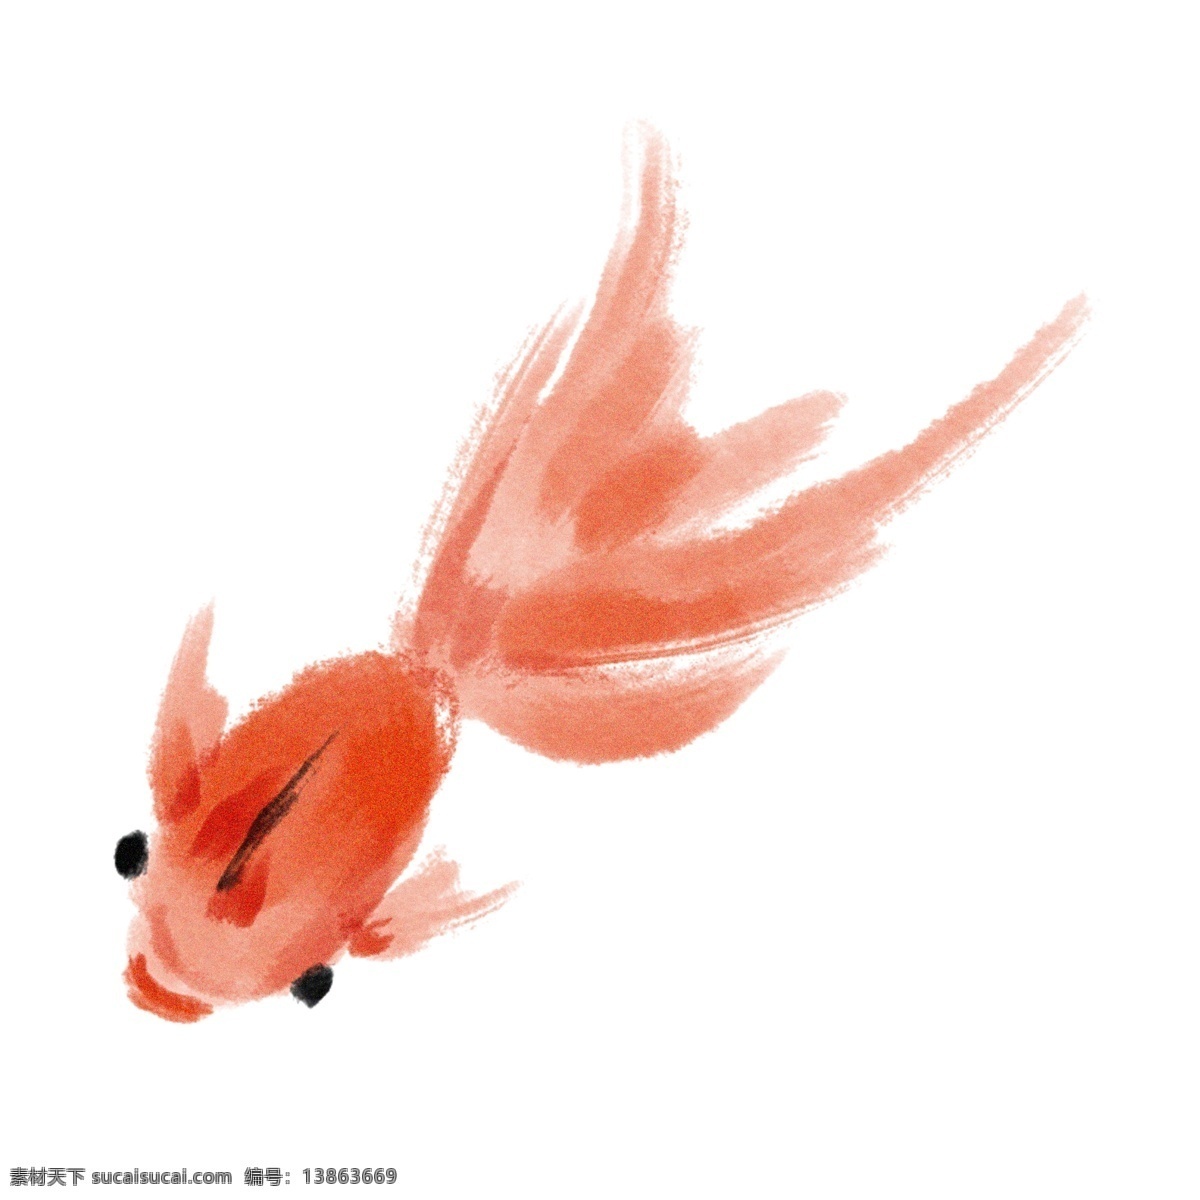 漂亮 水墨 金鱼 插画 红色的金鱼 卡通插画 水墨插画 金鱼插画 鱼类插画 活泼的鱼 可爱的金鱼